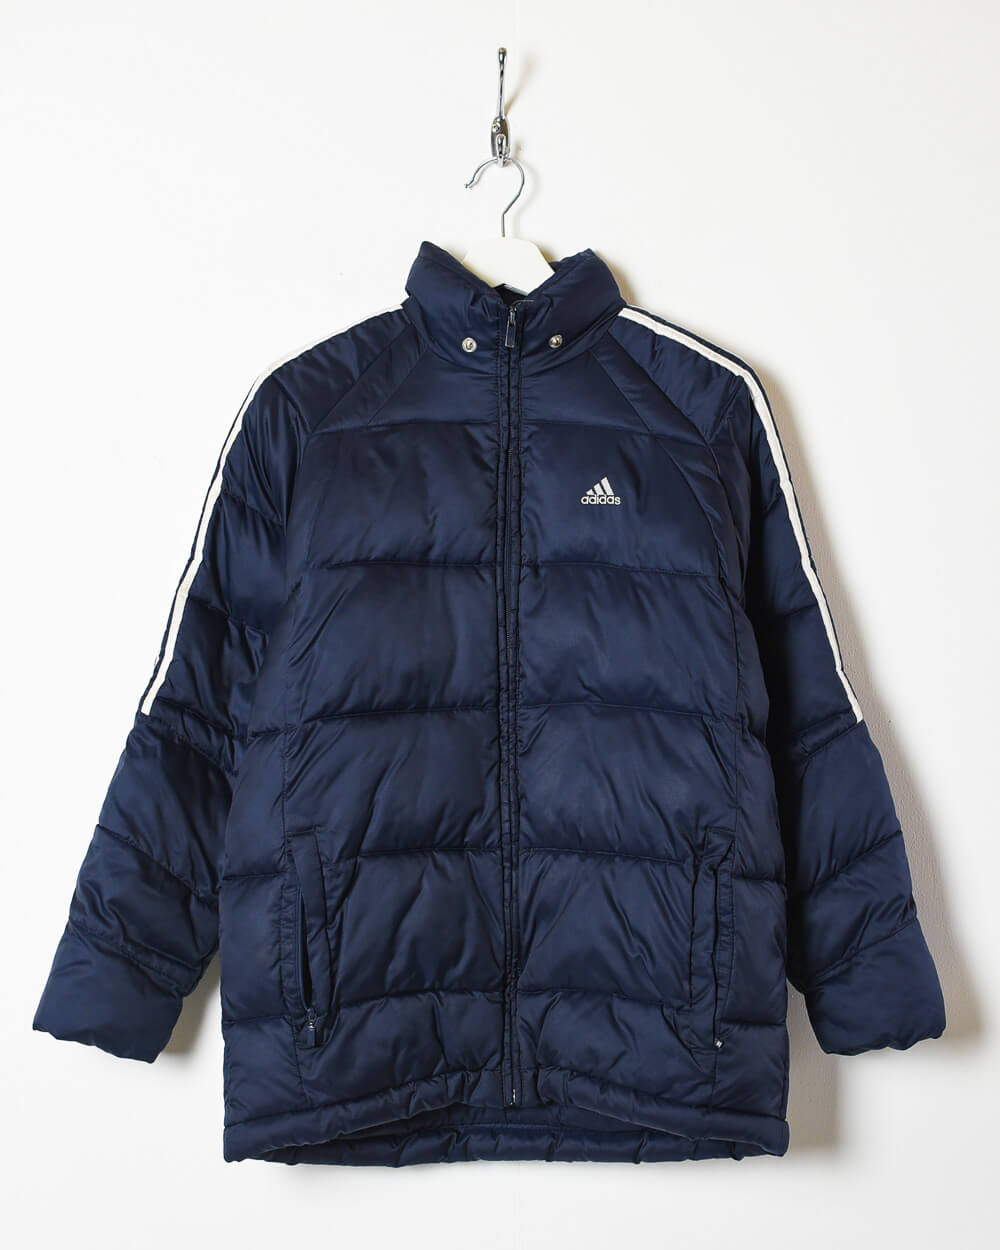 Adidas Puffer Jacket - Small